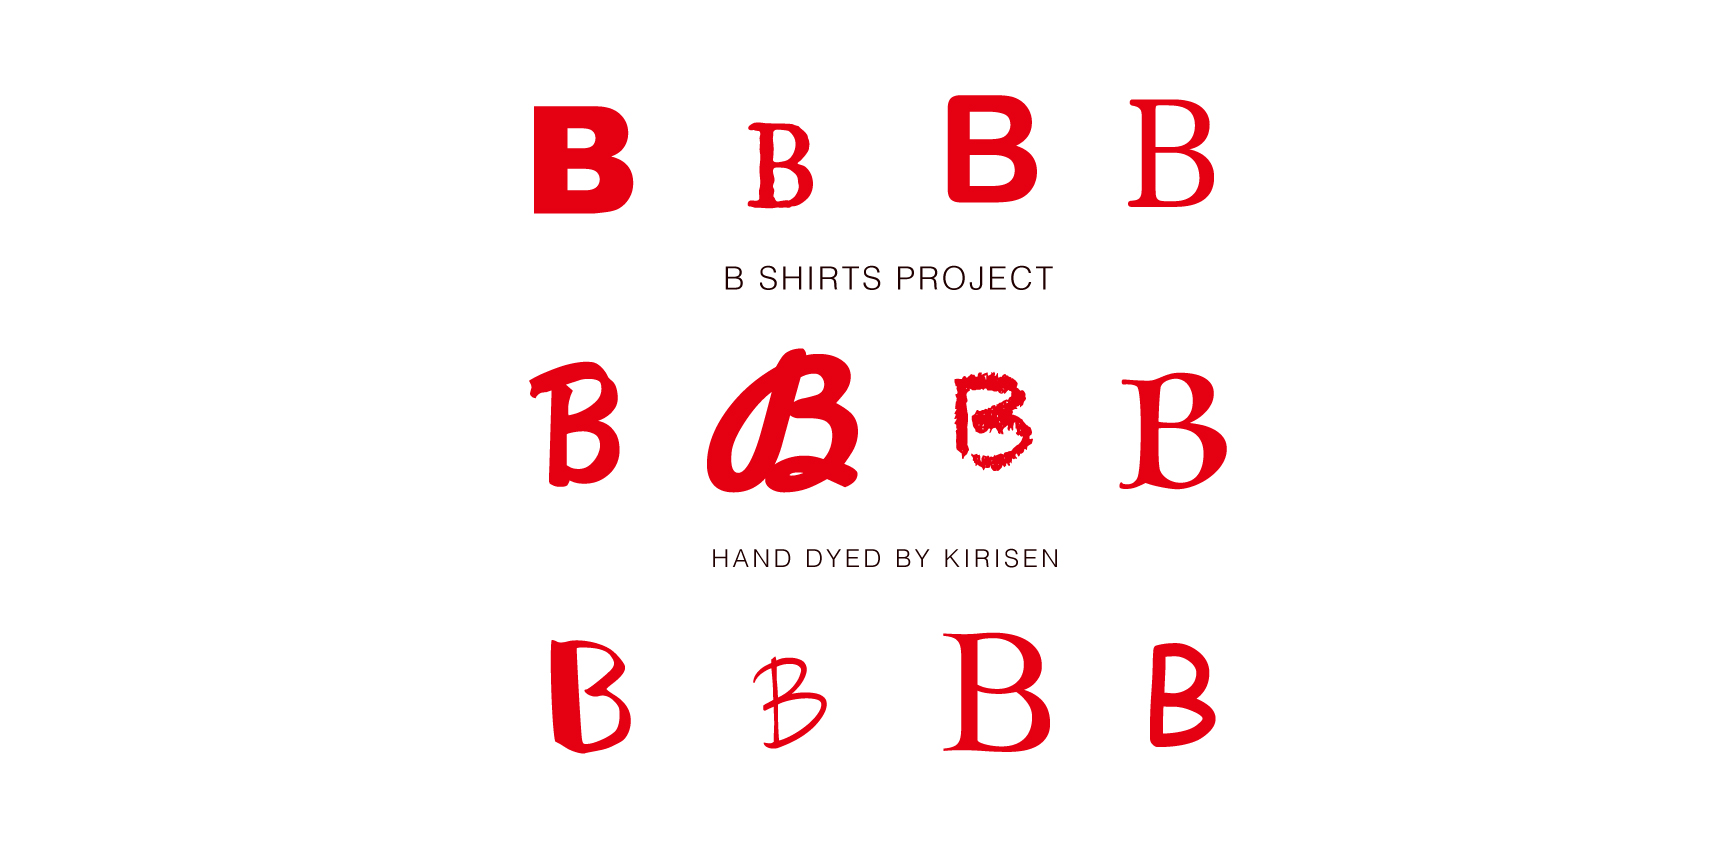 【お知らせ】B shirts project